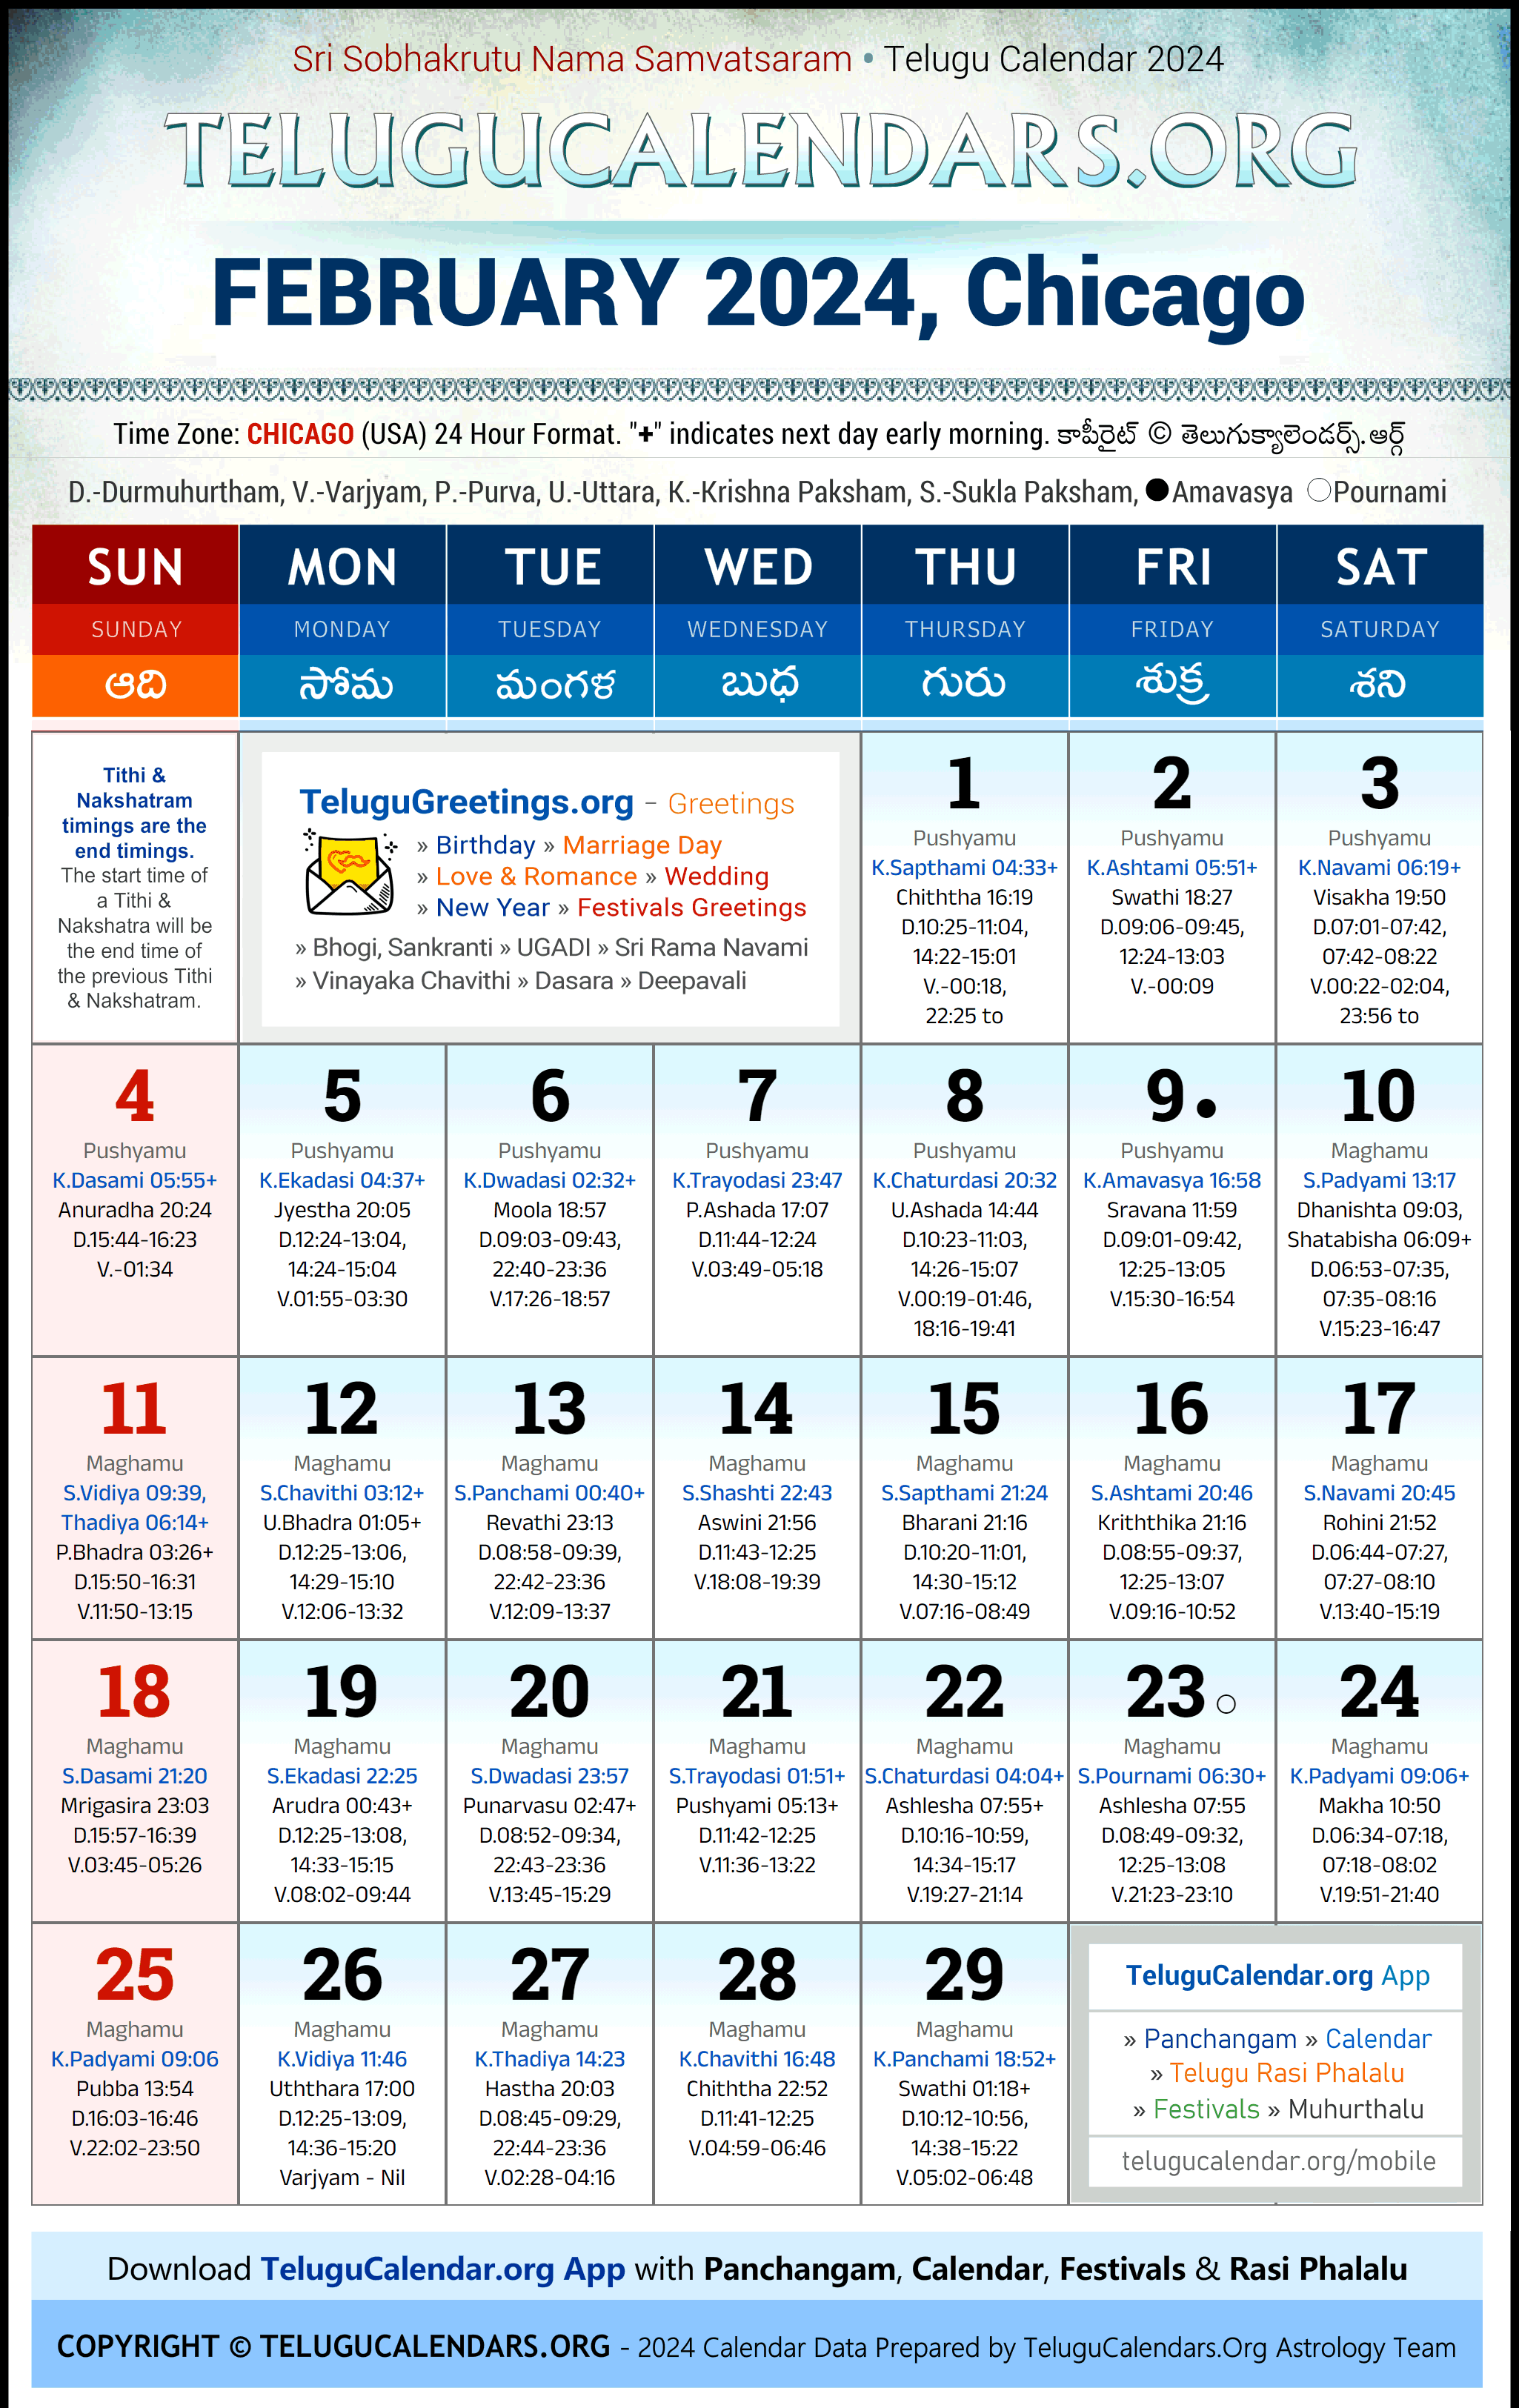 Telugu Calendar 2024 February Festivals for Chicago